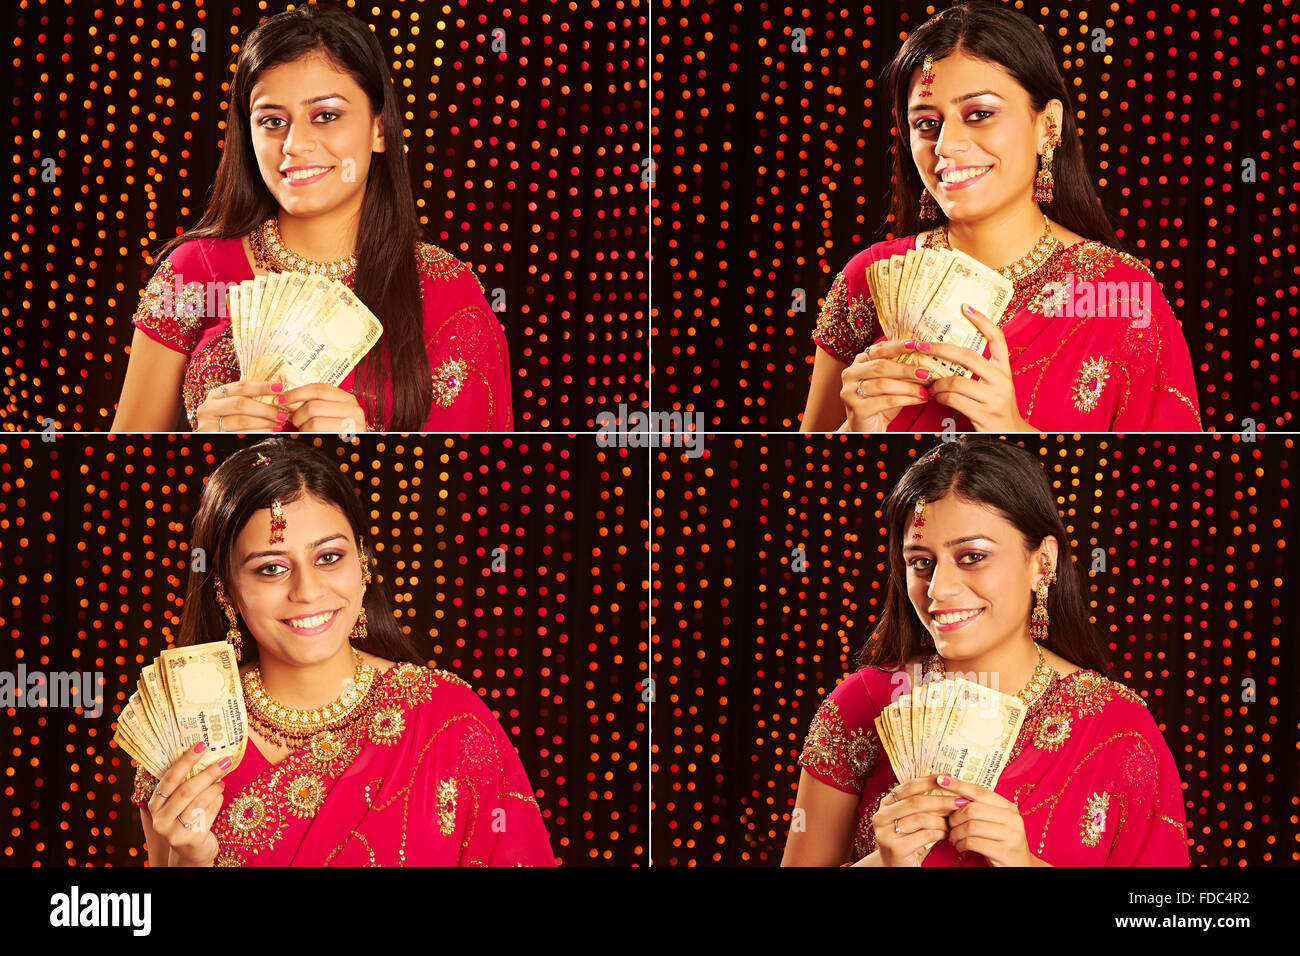 1 donna indiana che mostra il denaro di rupie diwali celebrazioni espressione facciale FOTO MONTAGE Foto Stock